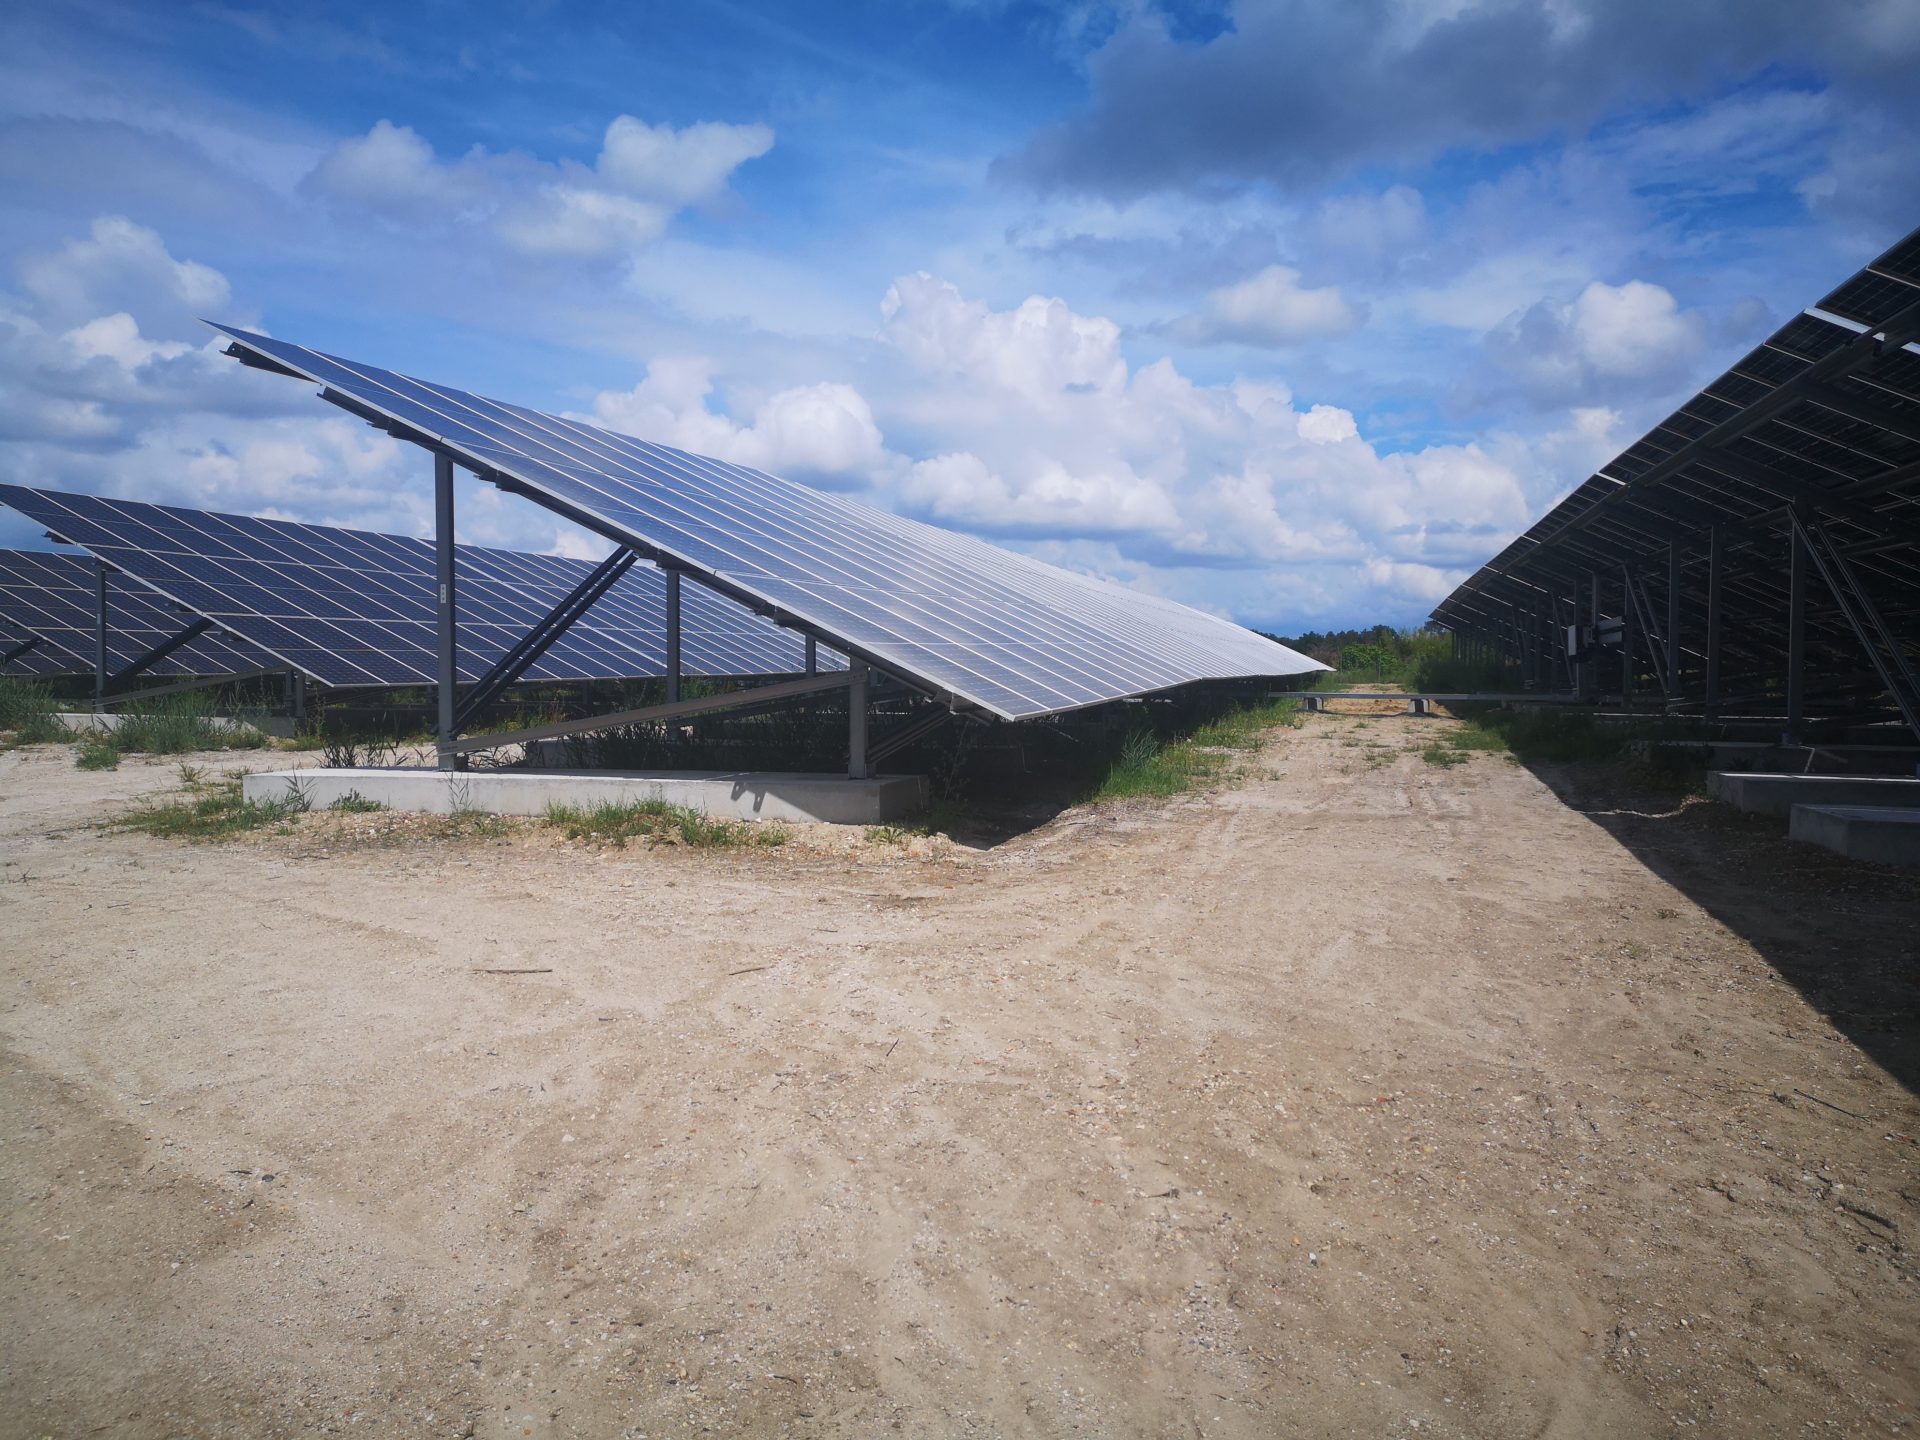 Inauguration de la centrale solaire de Monfaucon à Martignas-sur-Jalle